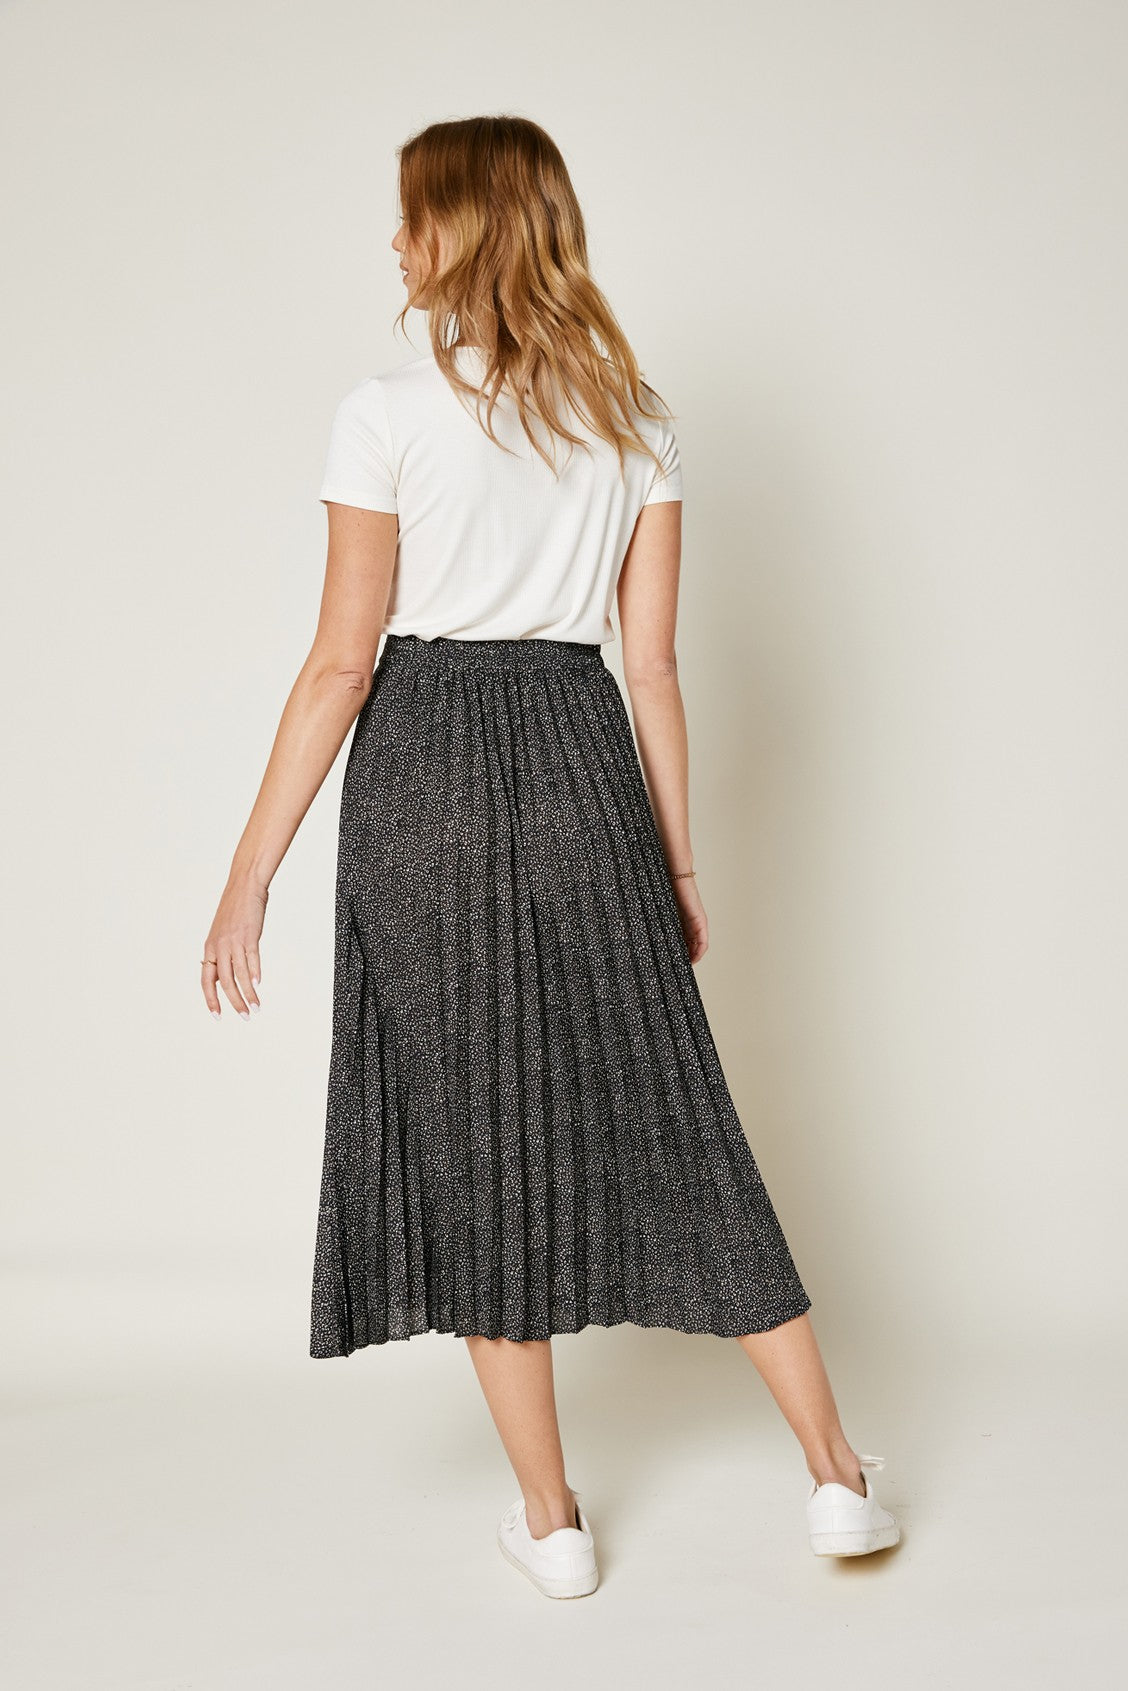 Pleated Skirt